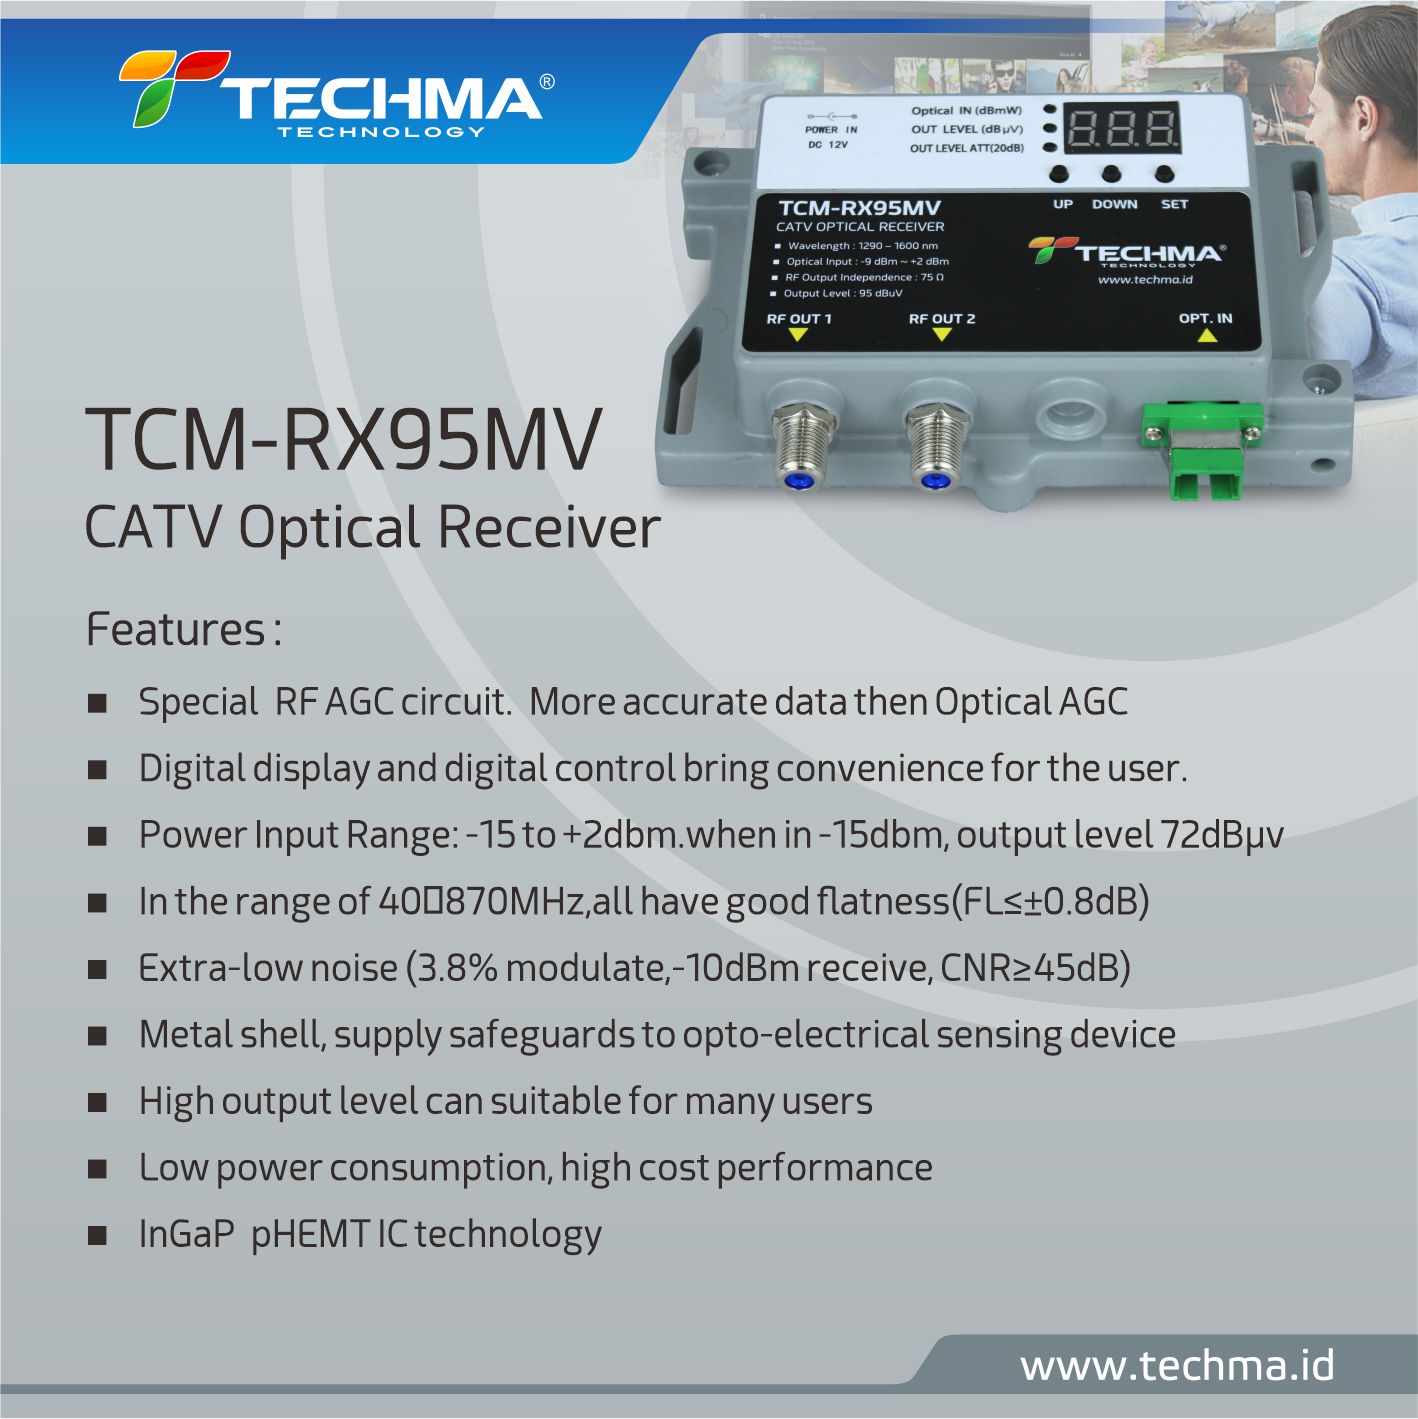 TCM-RX95MV [CATV Optical Receiver]